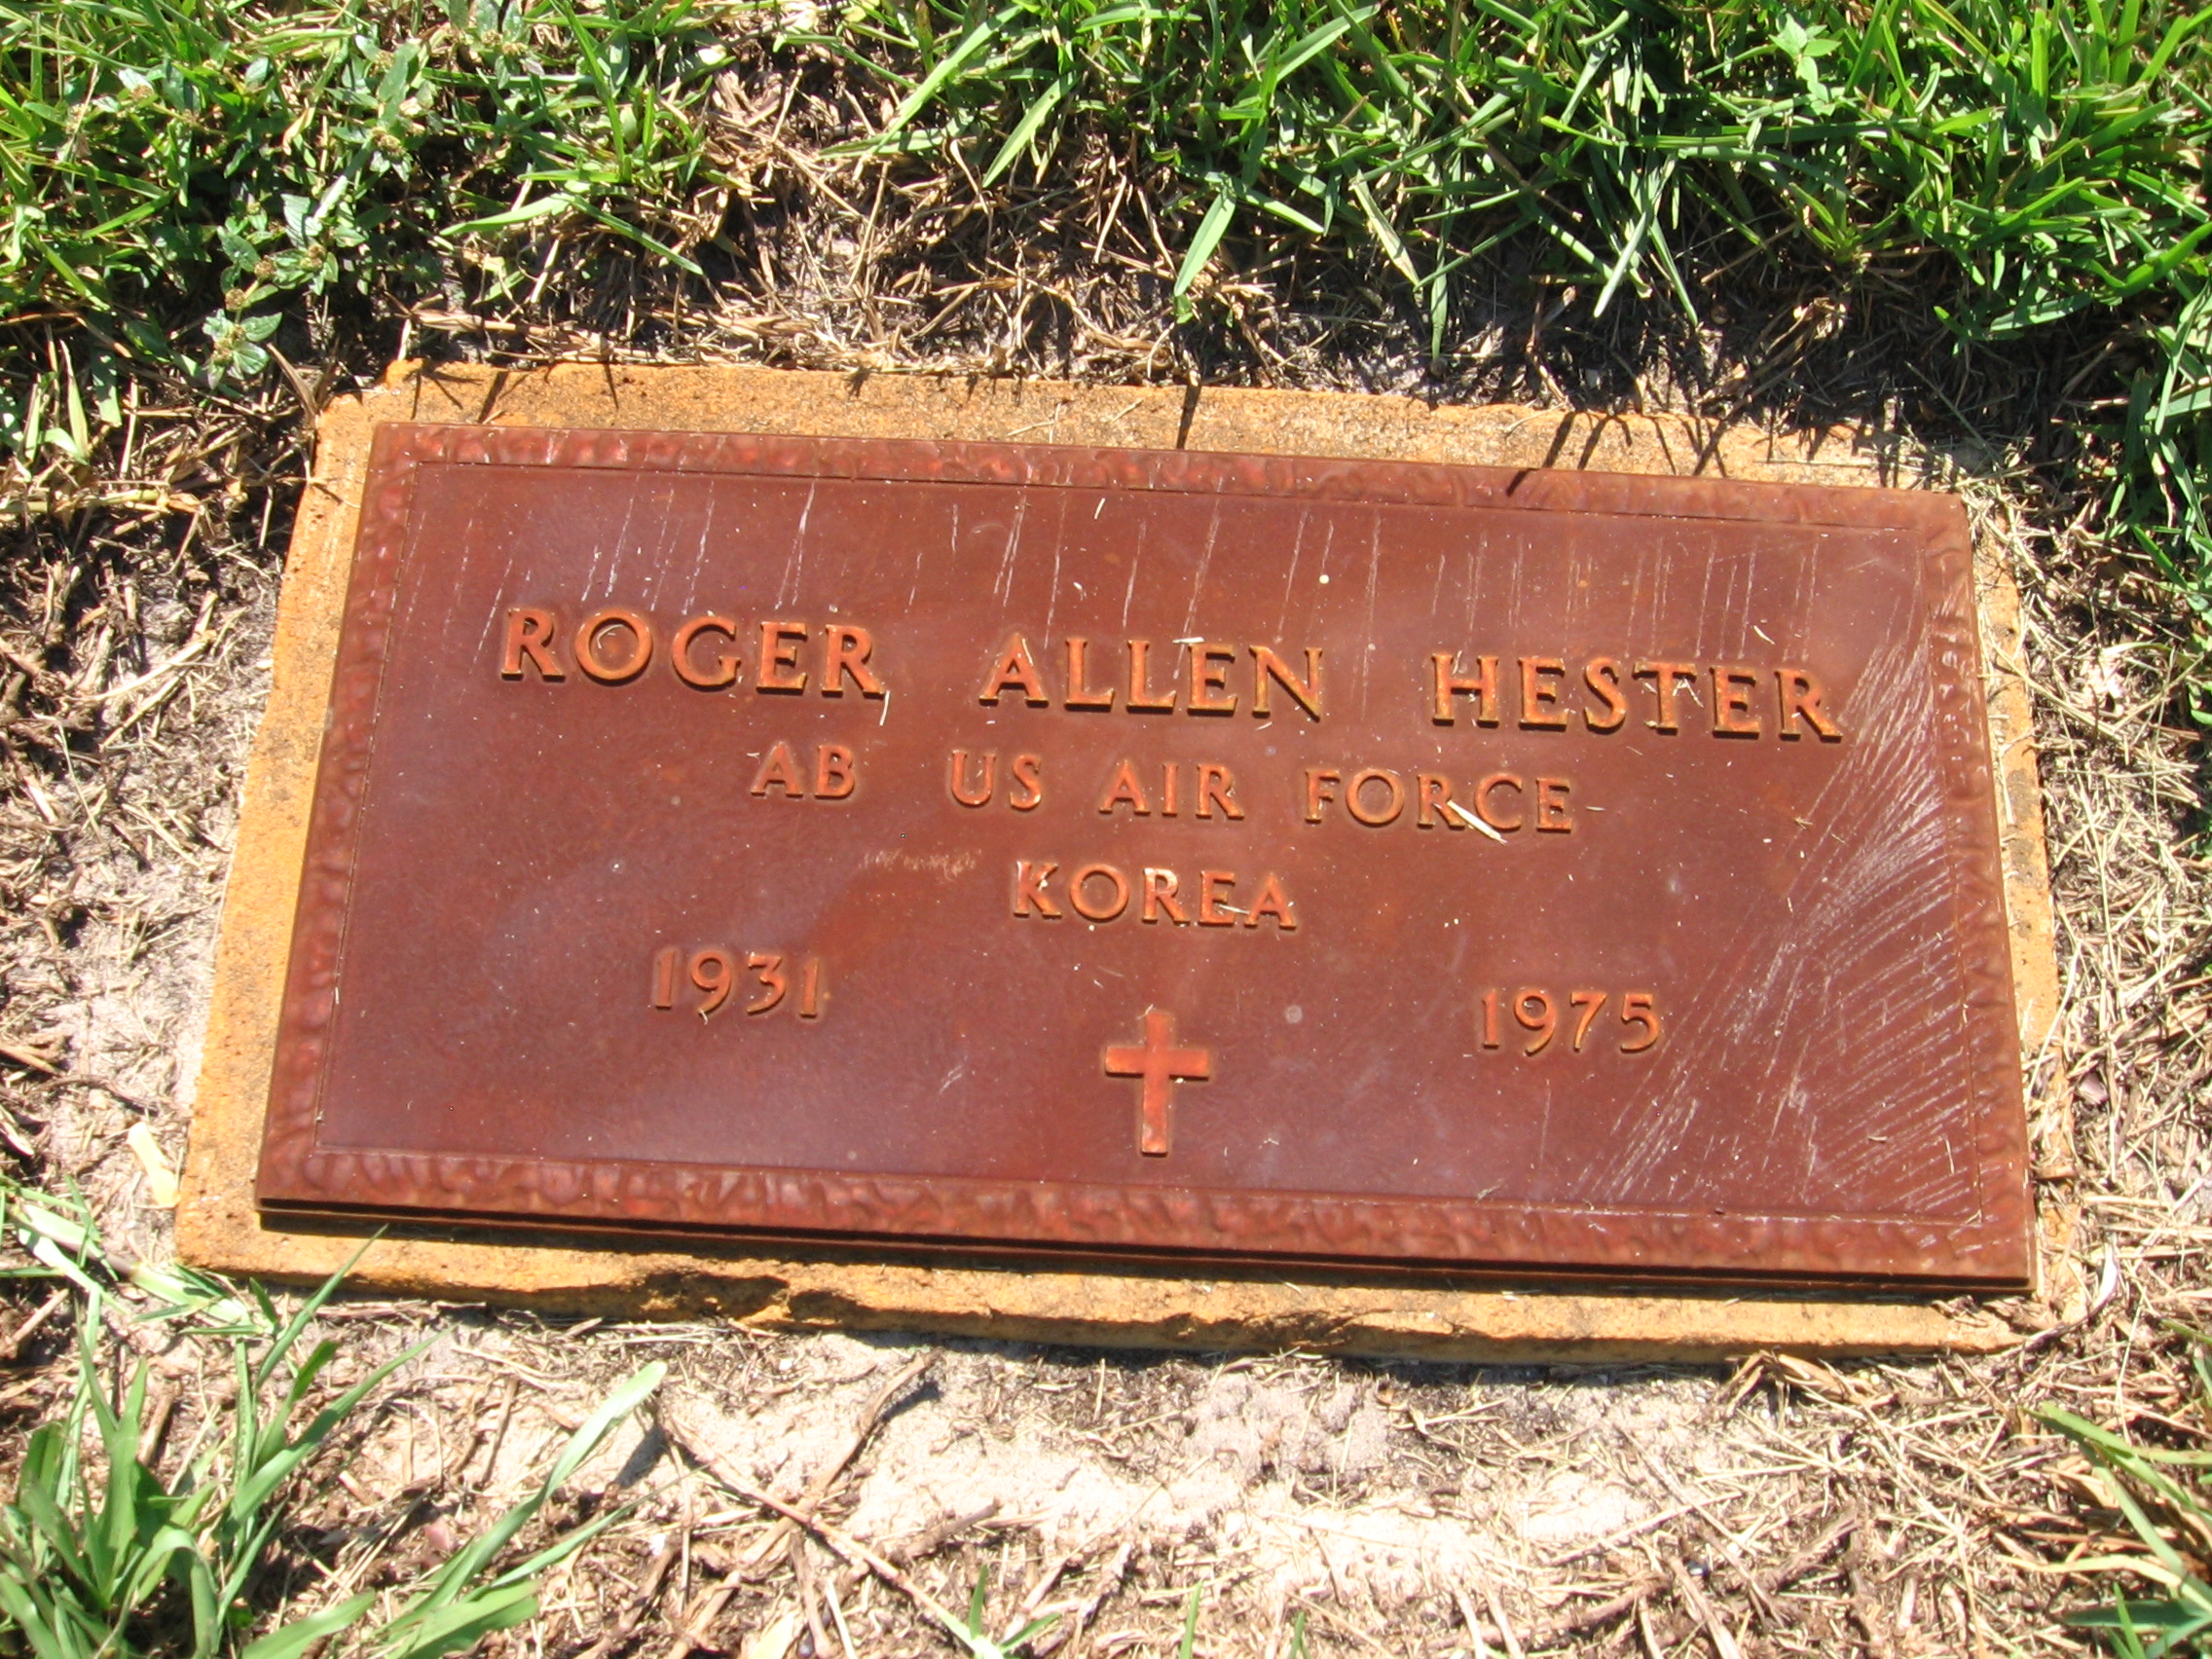 Roger Allen Hester